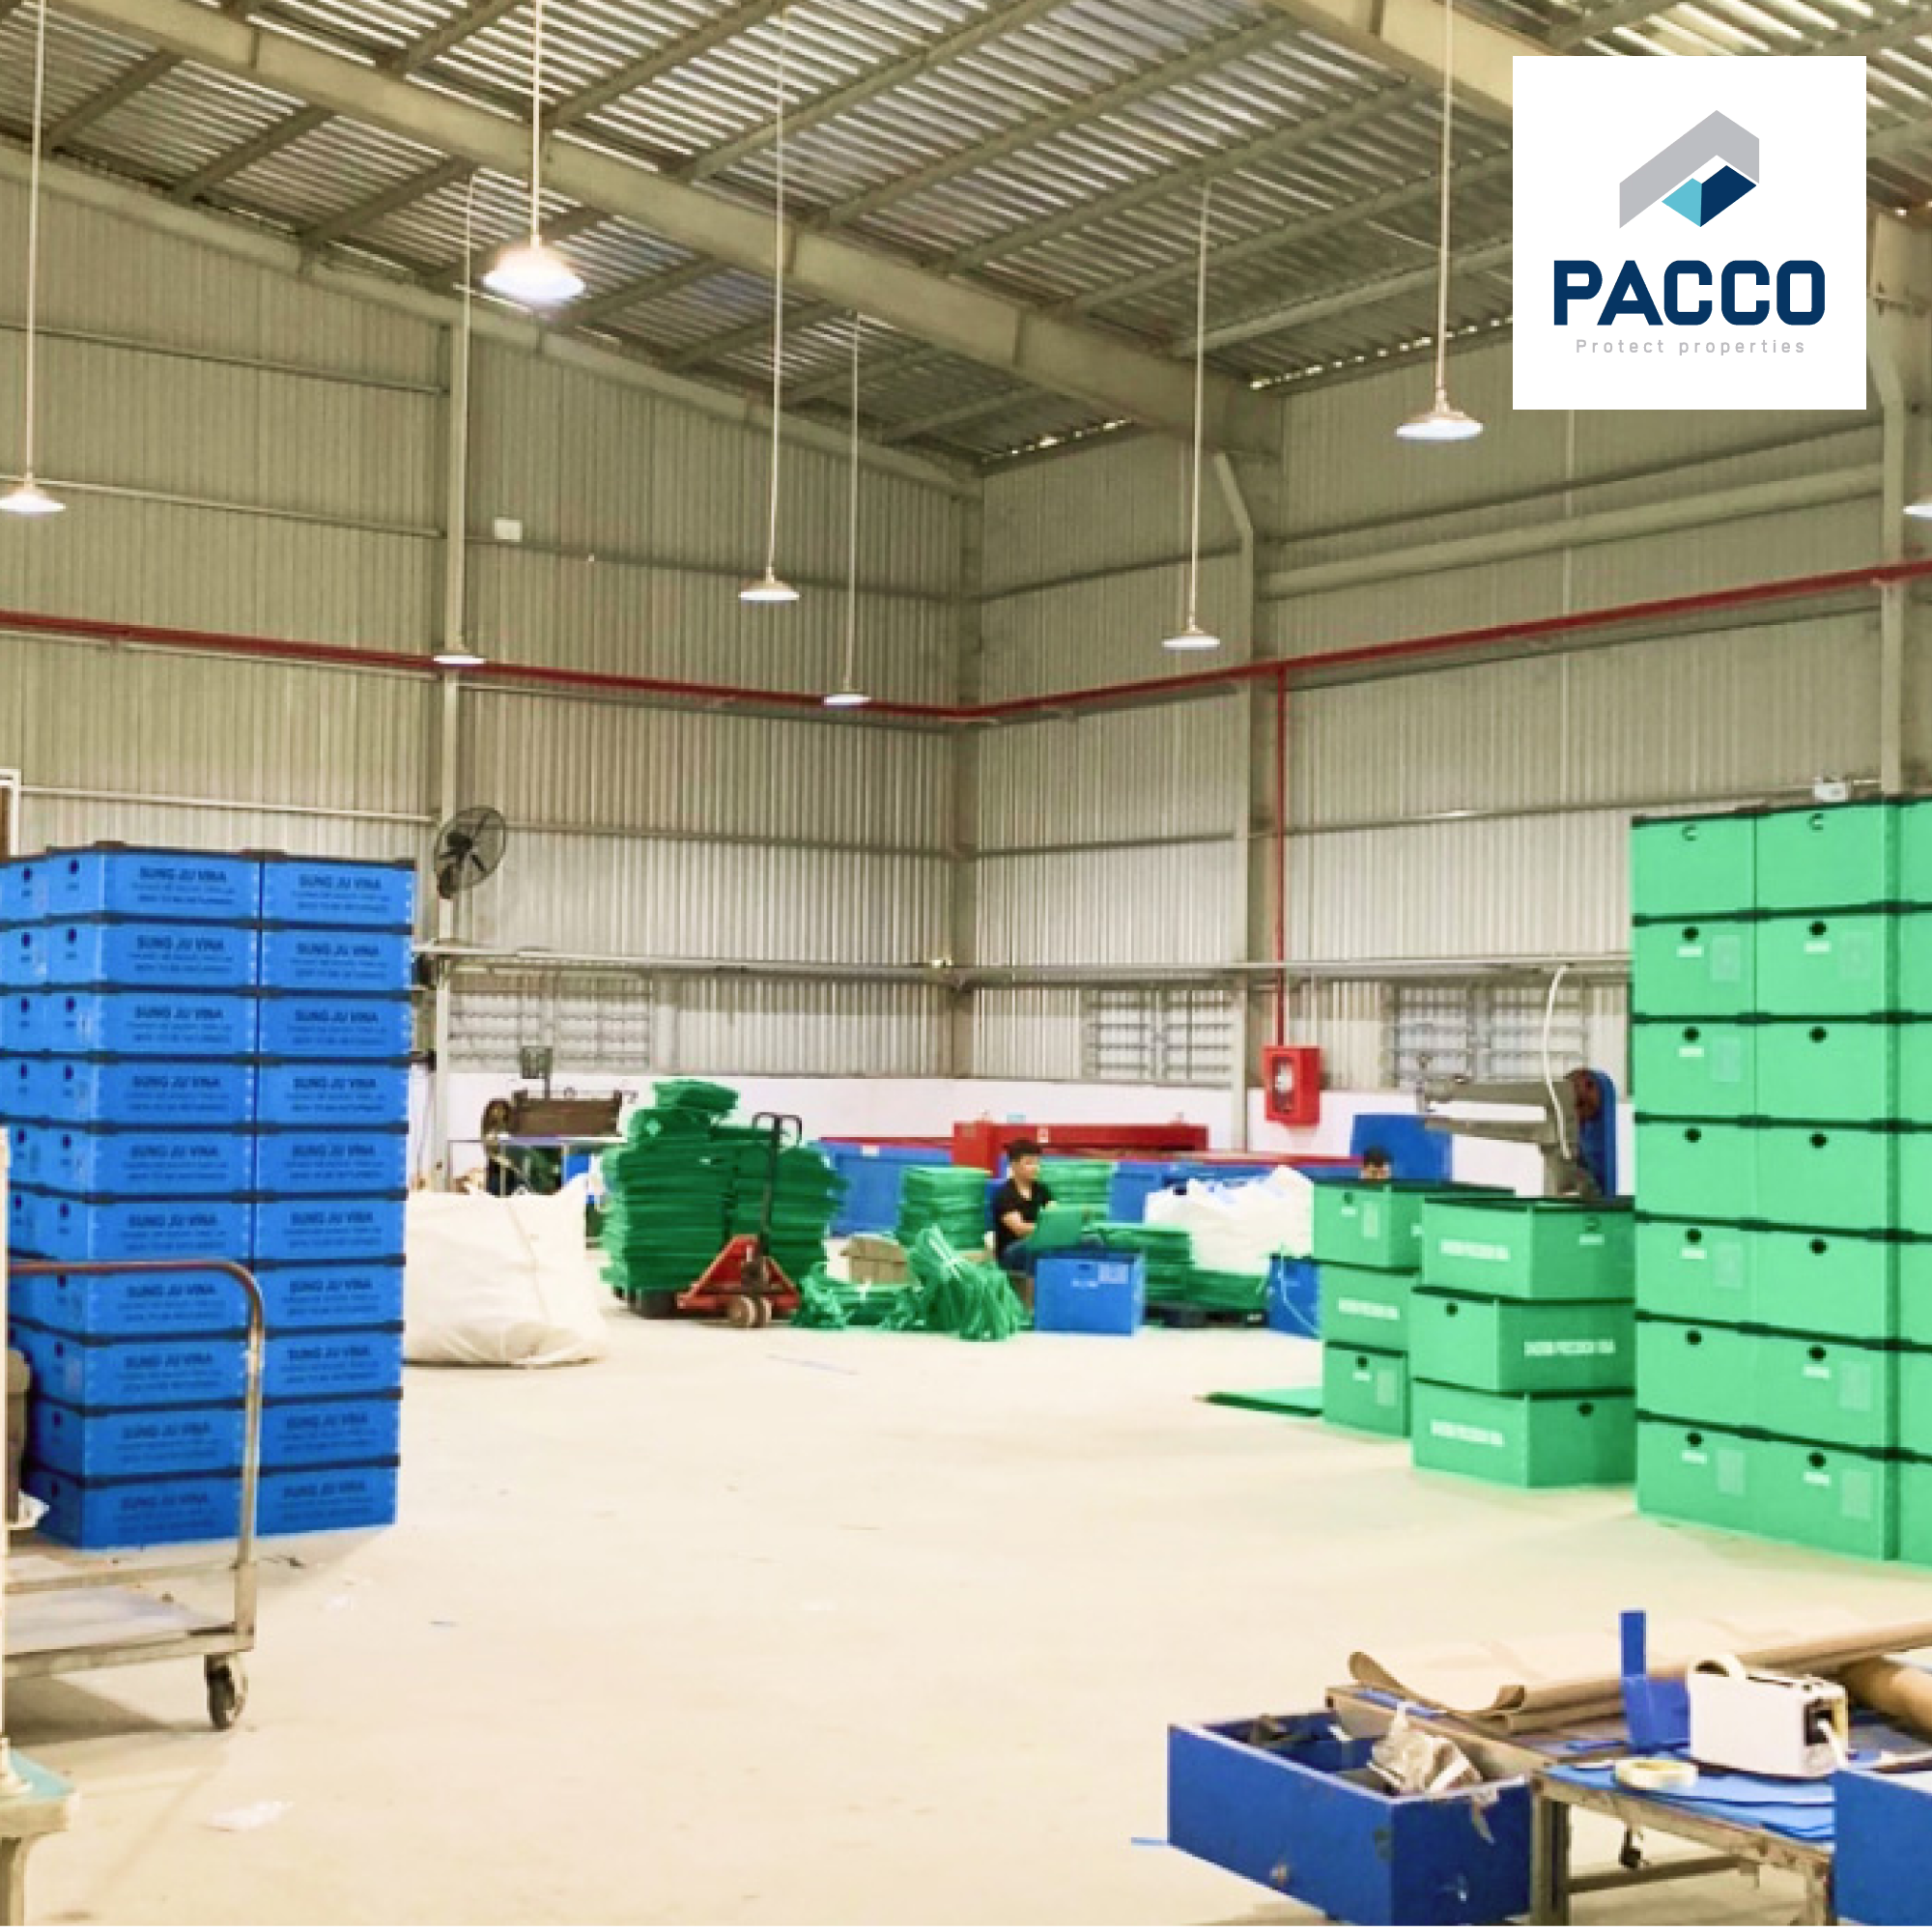 Pacco tự hào là đơn vị cung cấp thùng nhựa Danpla chống tĩnh điện chất lượng hàng đầu Việt Nam